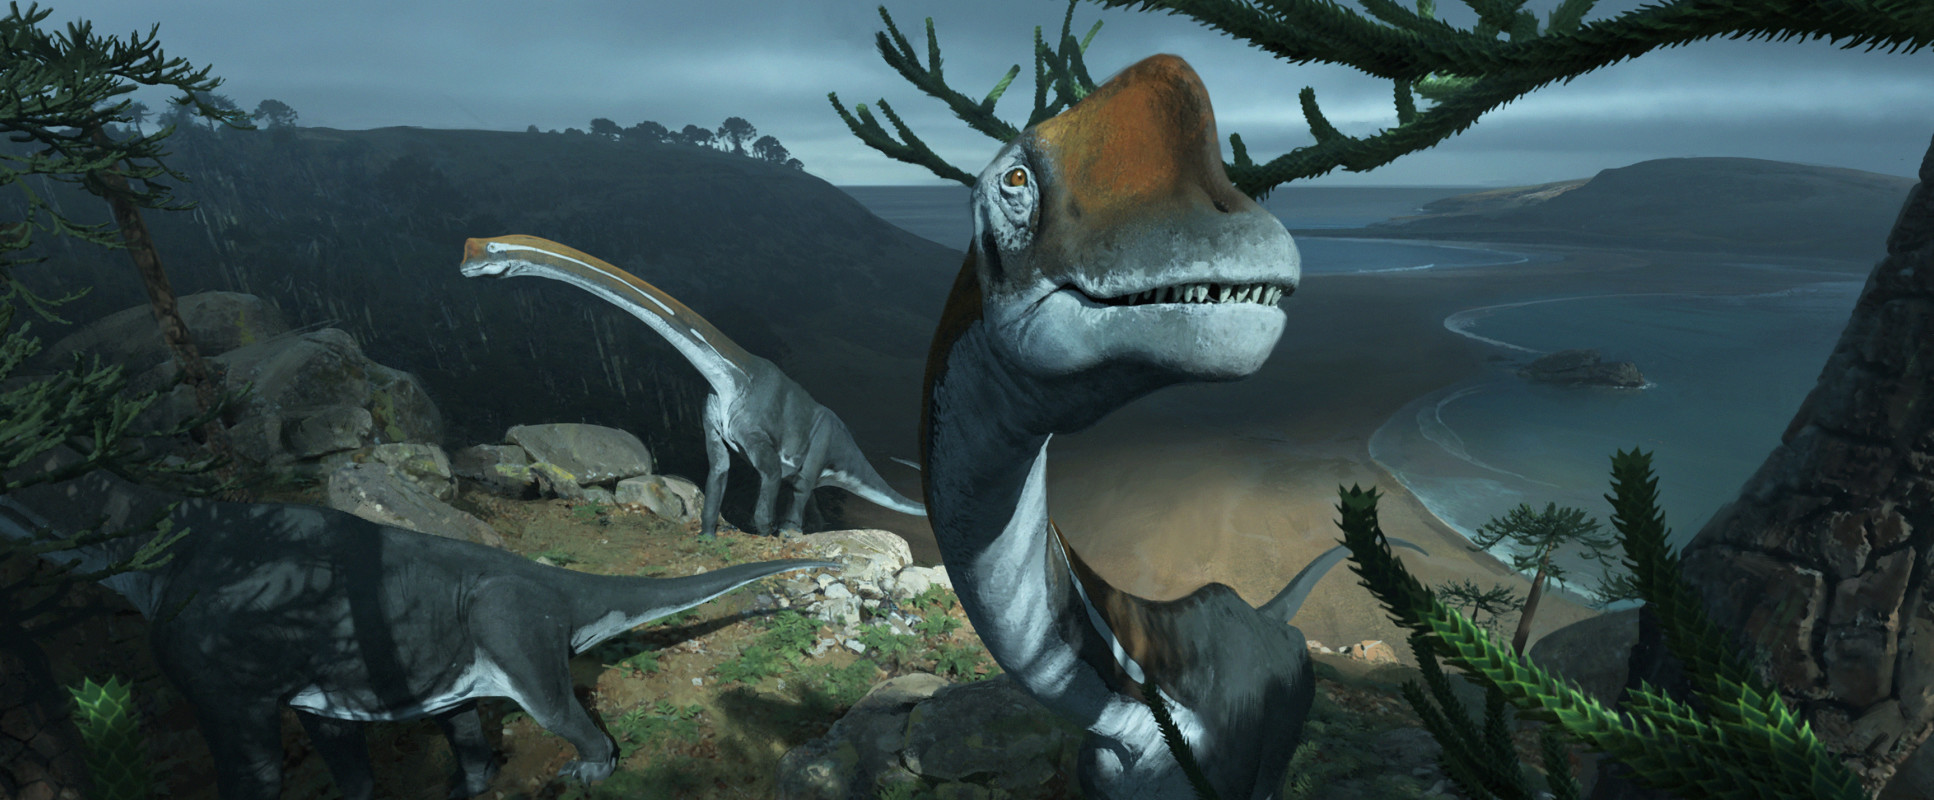 Illustration of Brachiosaurus dinosaur